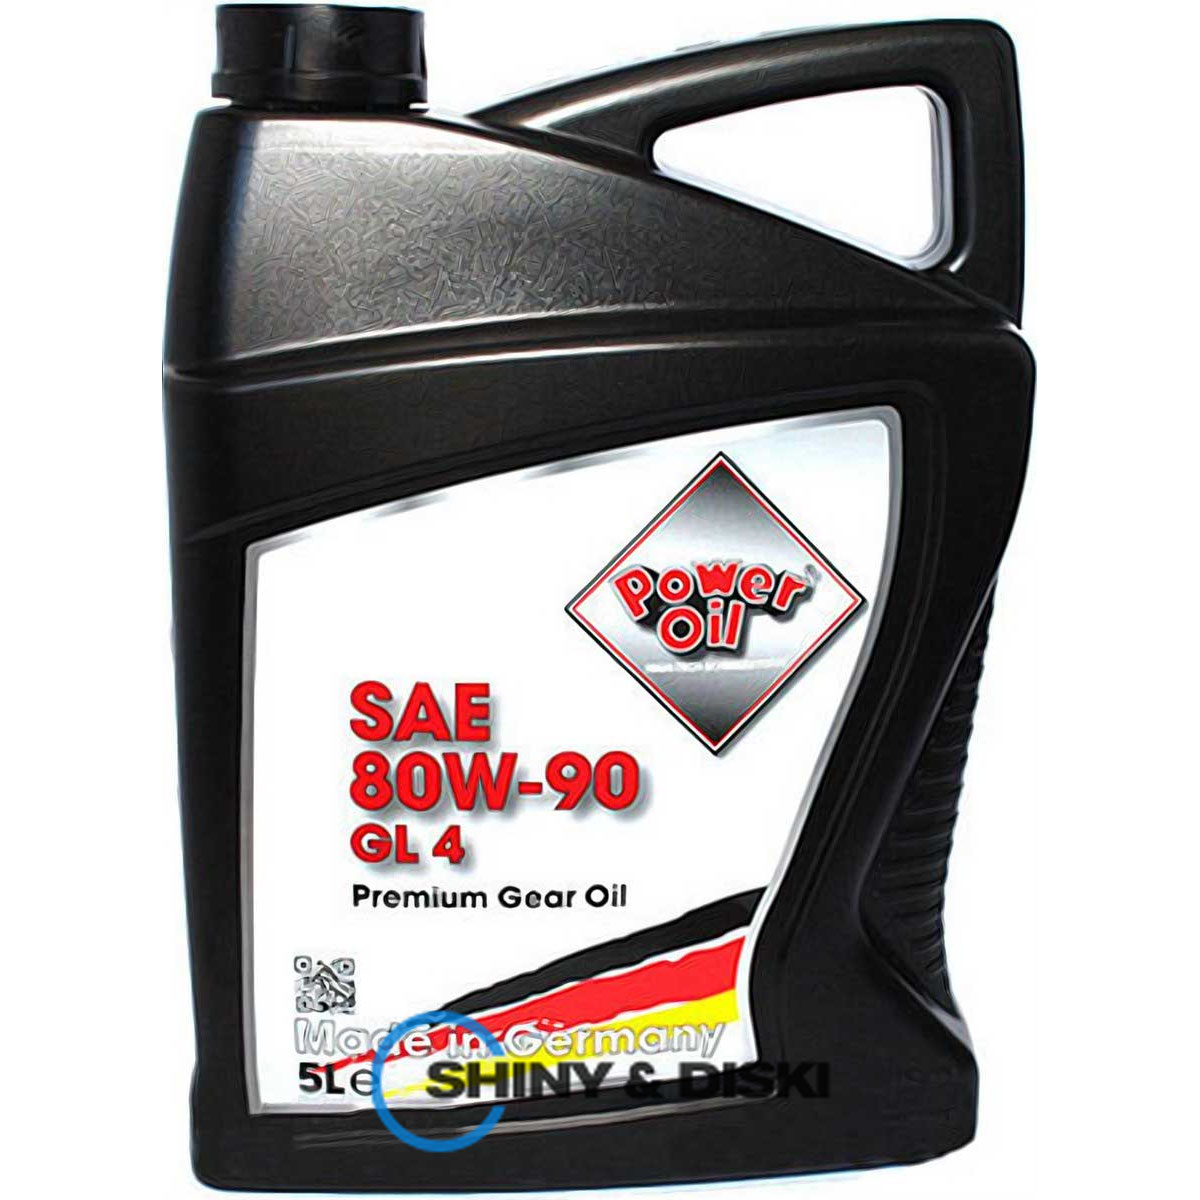 power oil gear oil 80w-90 gl 4 (5л)